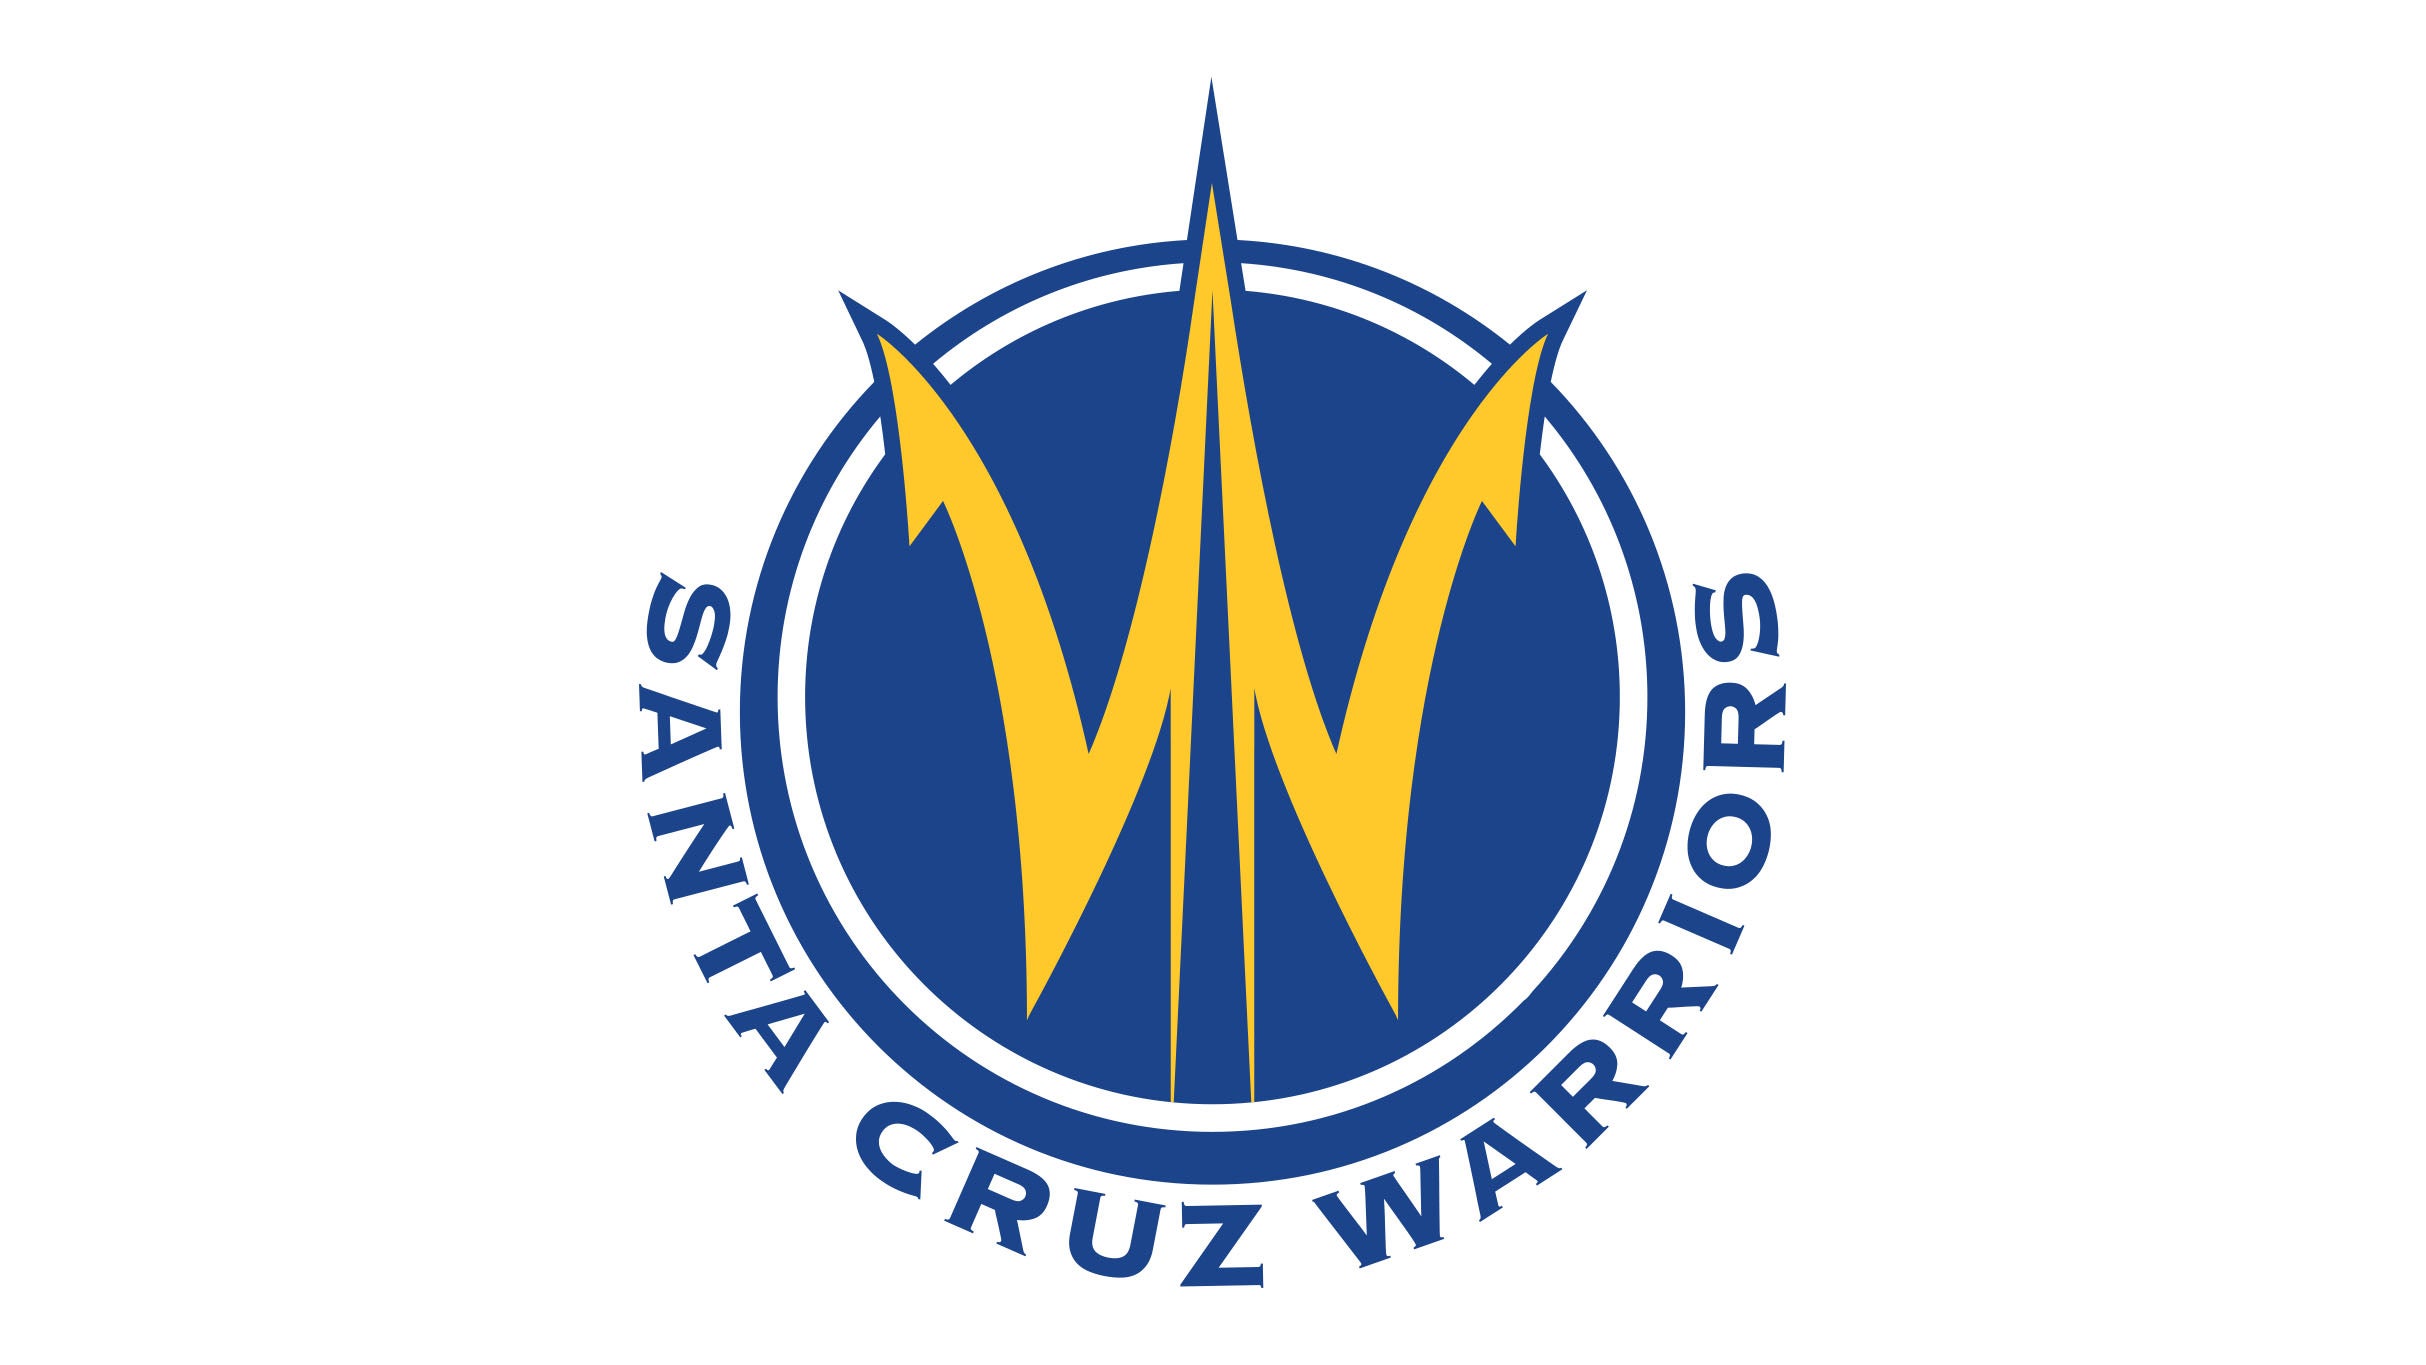 Santa Cruz Warriors vs. South Bay Lakers in Santa Cruz promo photo for Insider presale offer code